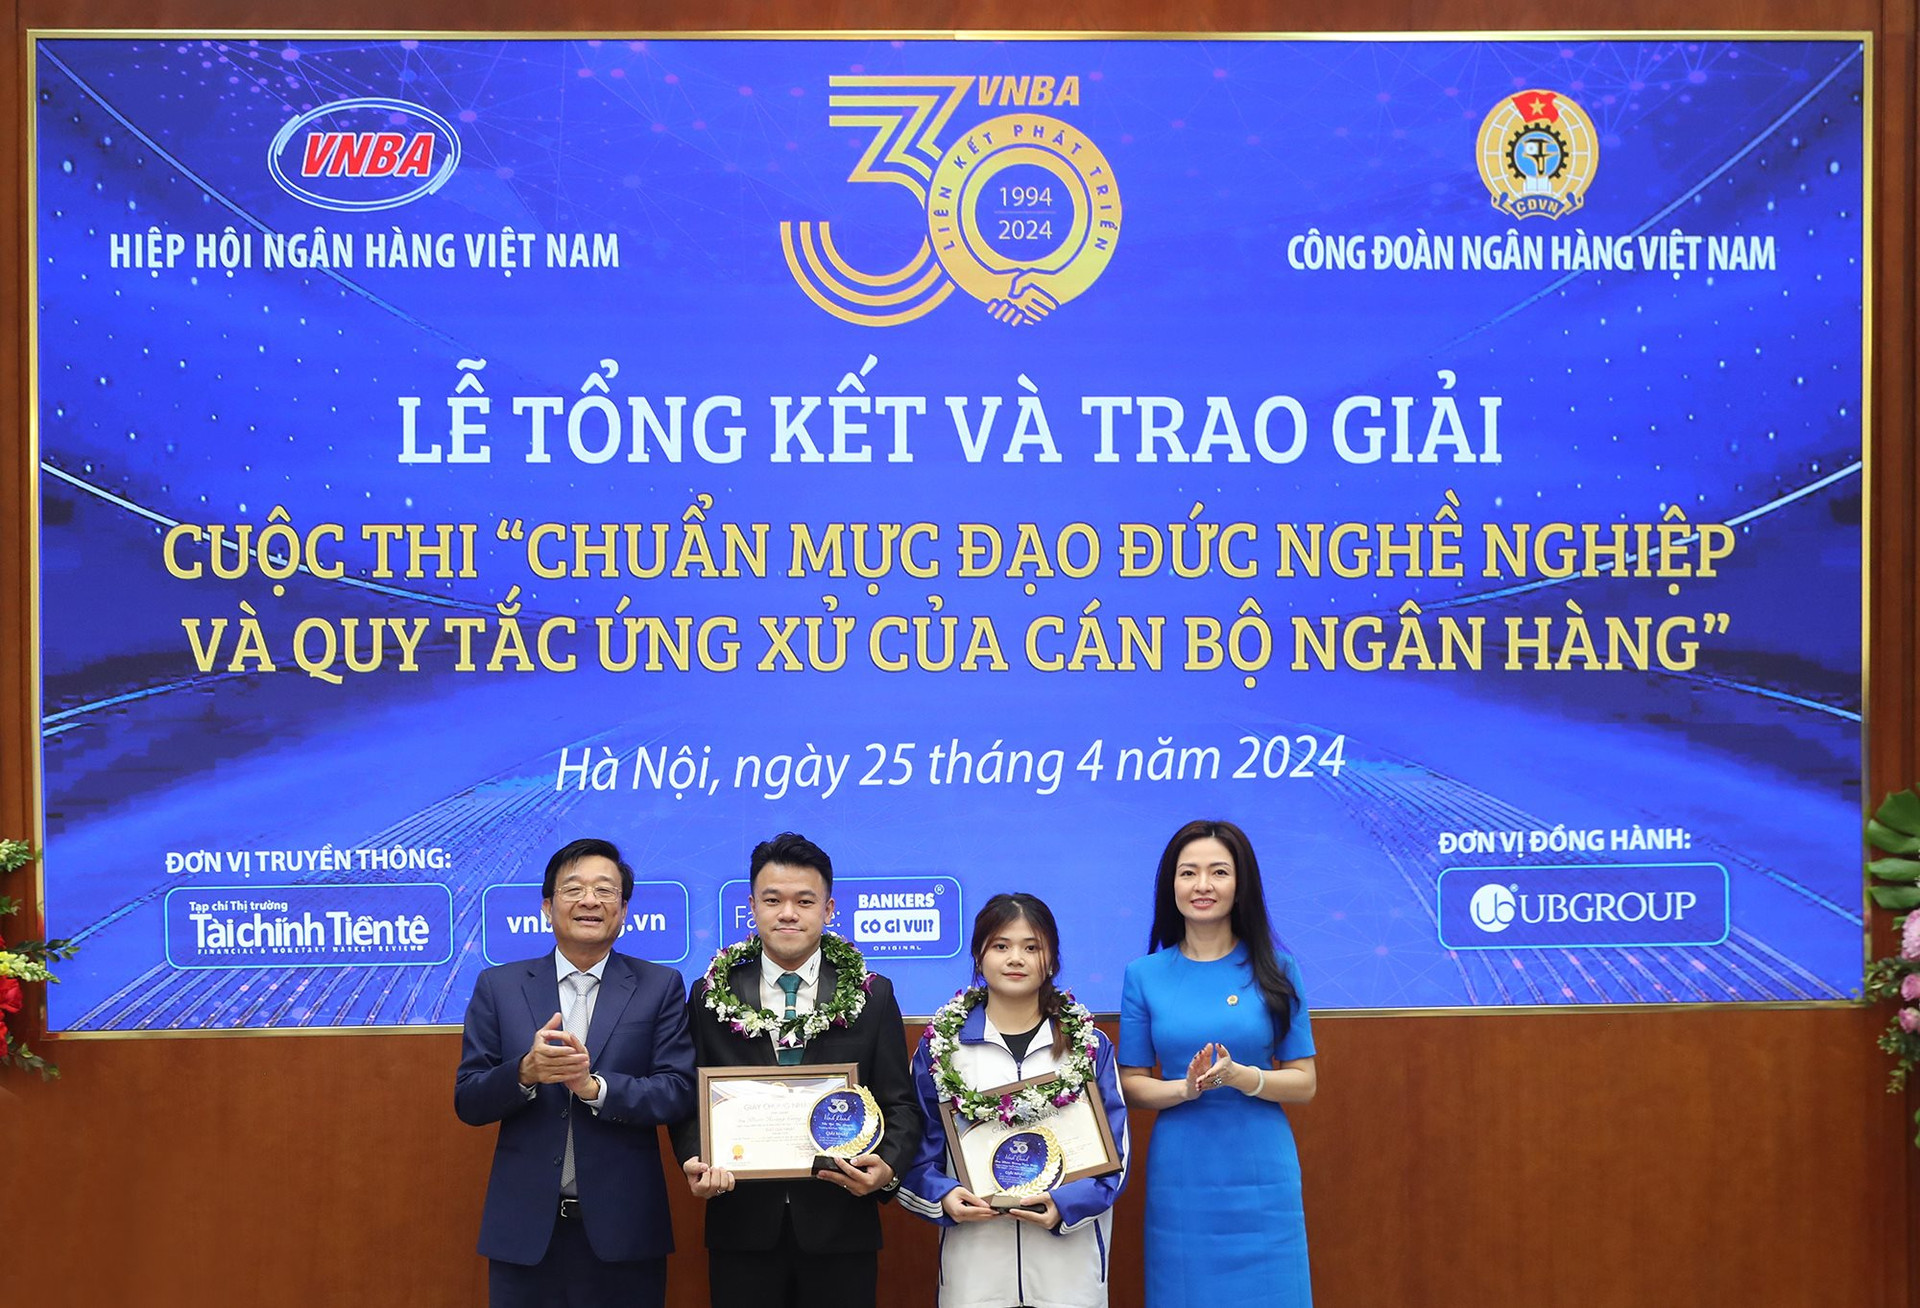 Ông Nguyễn Quốc Hùng và bà Nguyễn Khánh Chi trao giải thưởng cho 2 thí sinh đạt giải Nhất chung cuộc khối Ngân hàng và khối sinh viên là thí sinh Nguyễn Hoàng Công Huân (BIDV) và thí sinh Bùi Thị Duyên (Đại học Thủ đô Hà Nội)